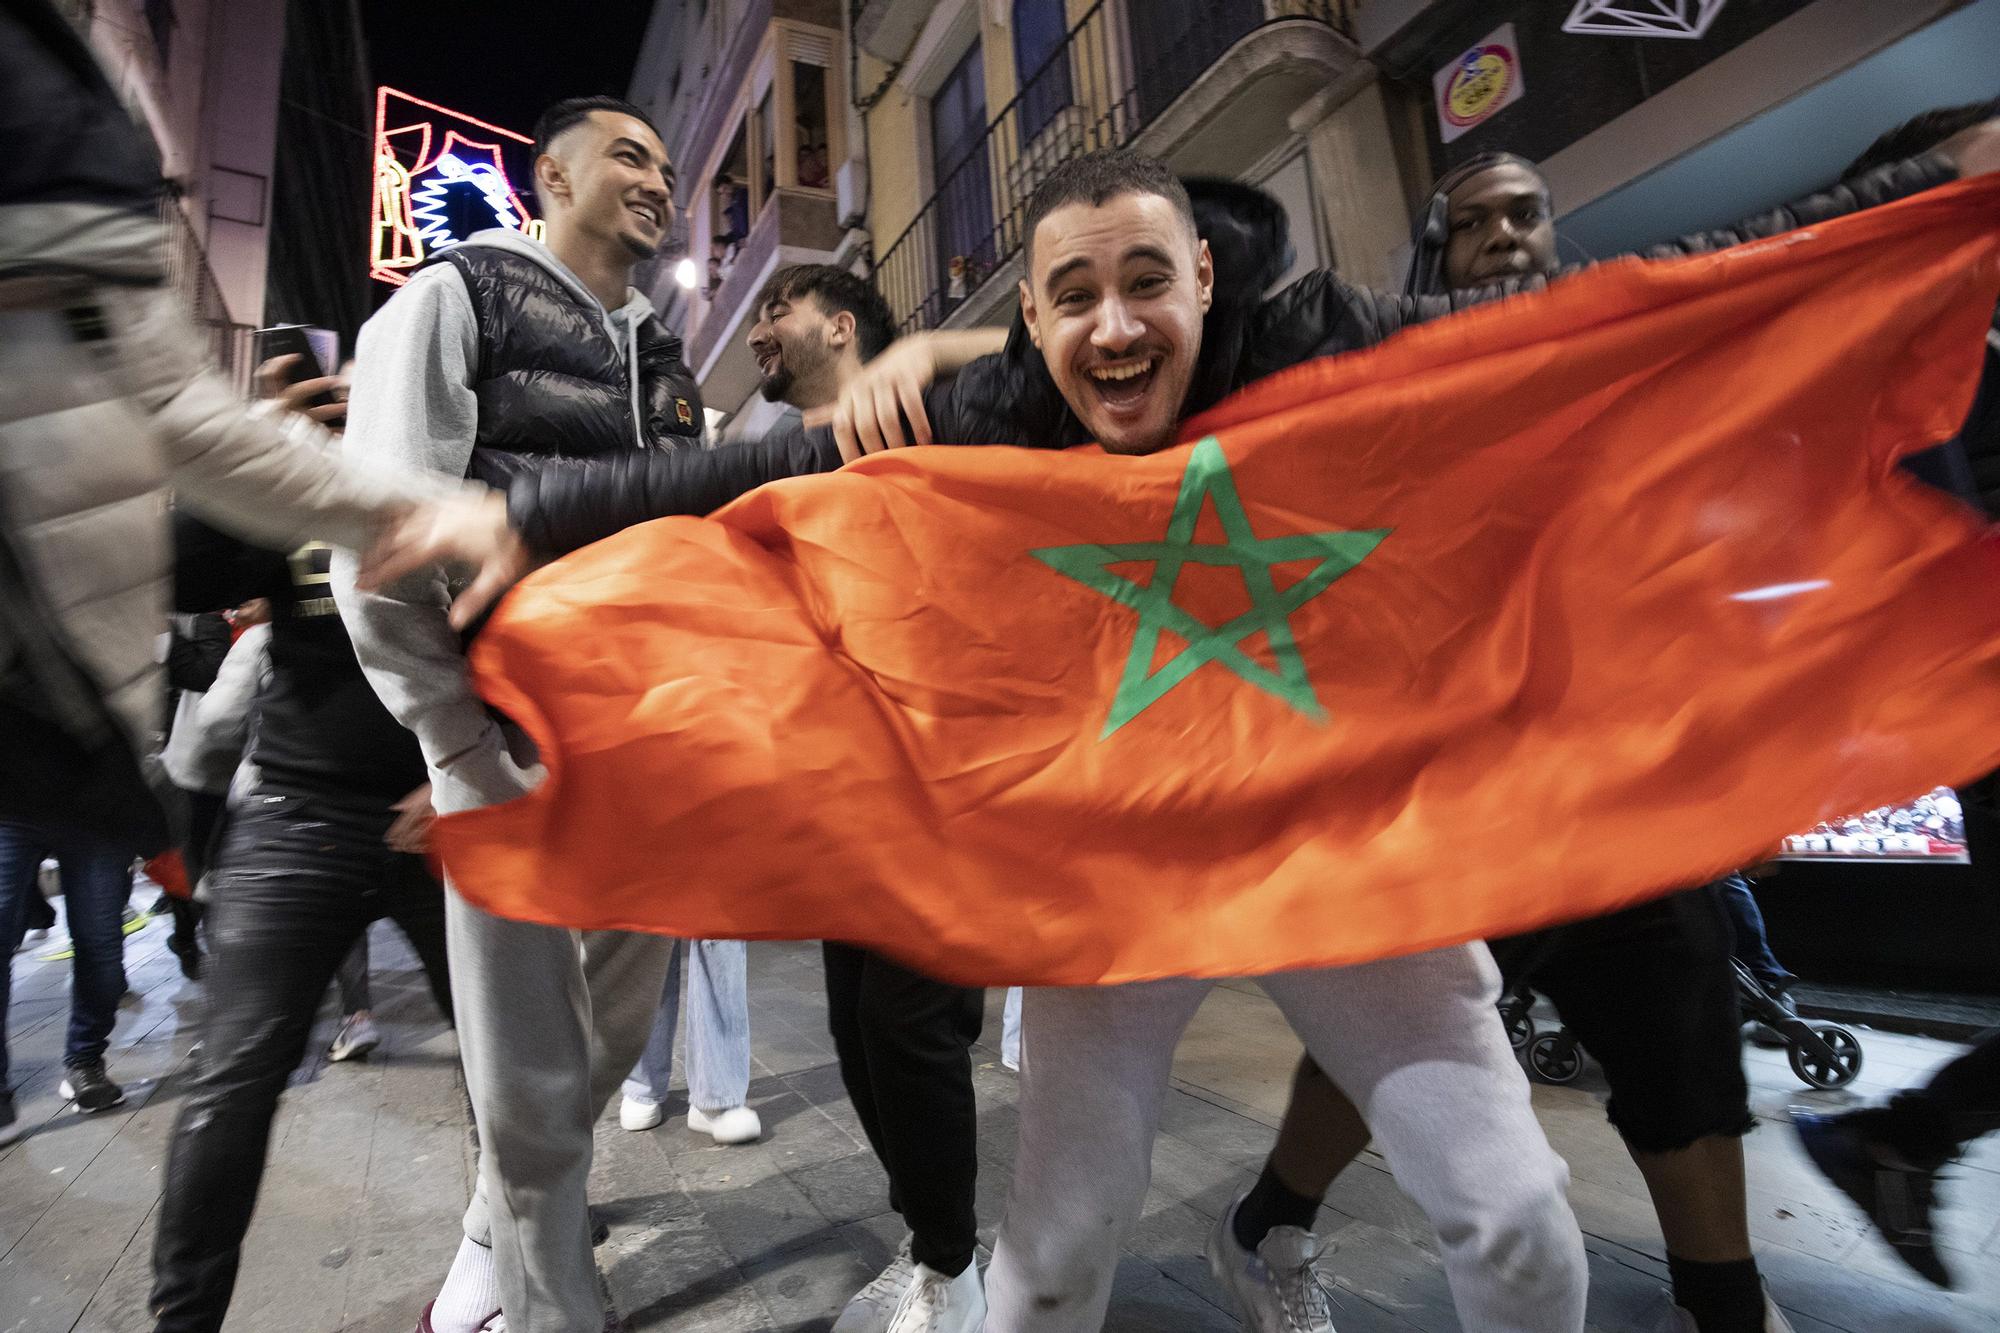 Galeria: Celebració a Marroc de la victòria sobre Espanya